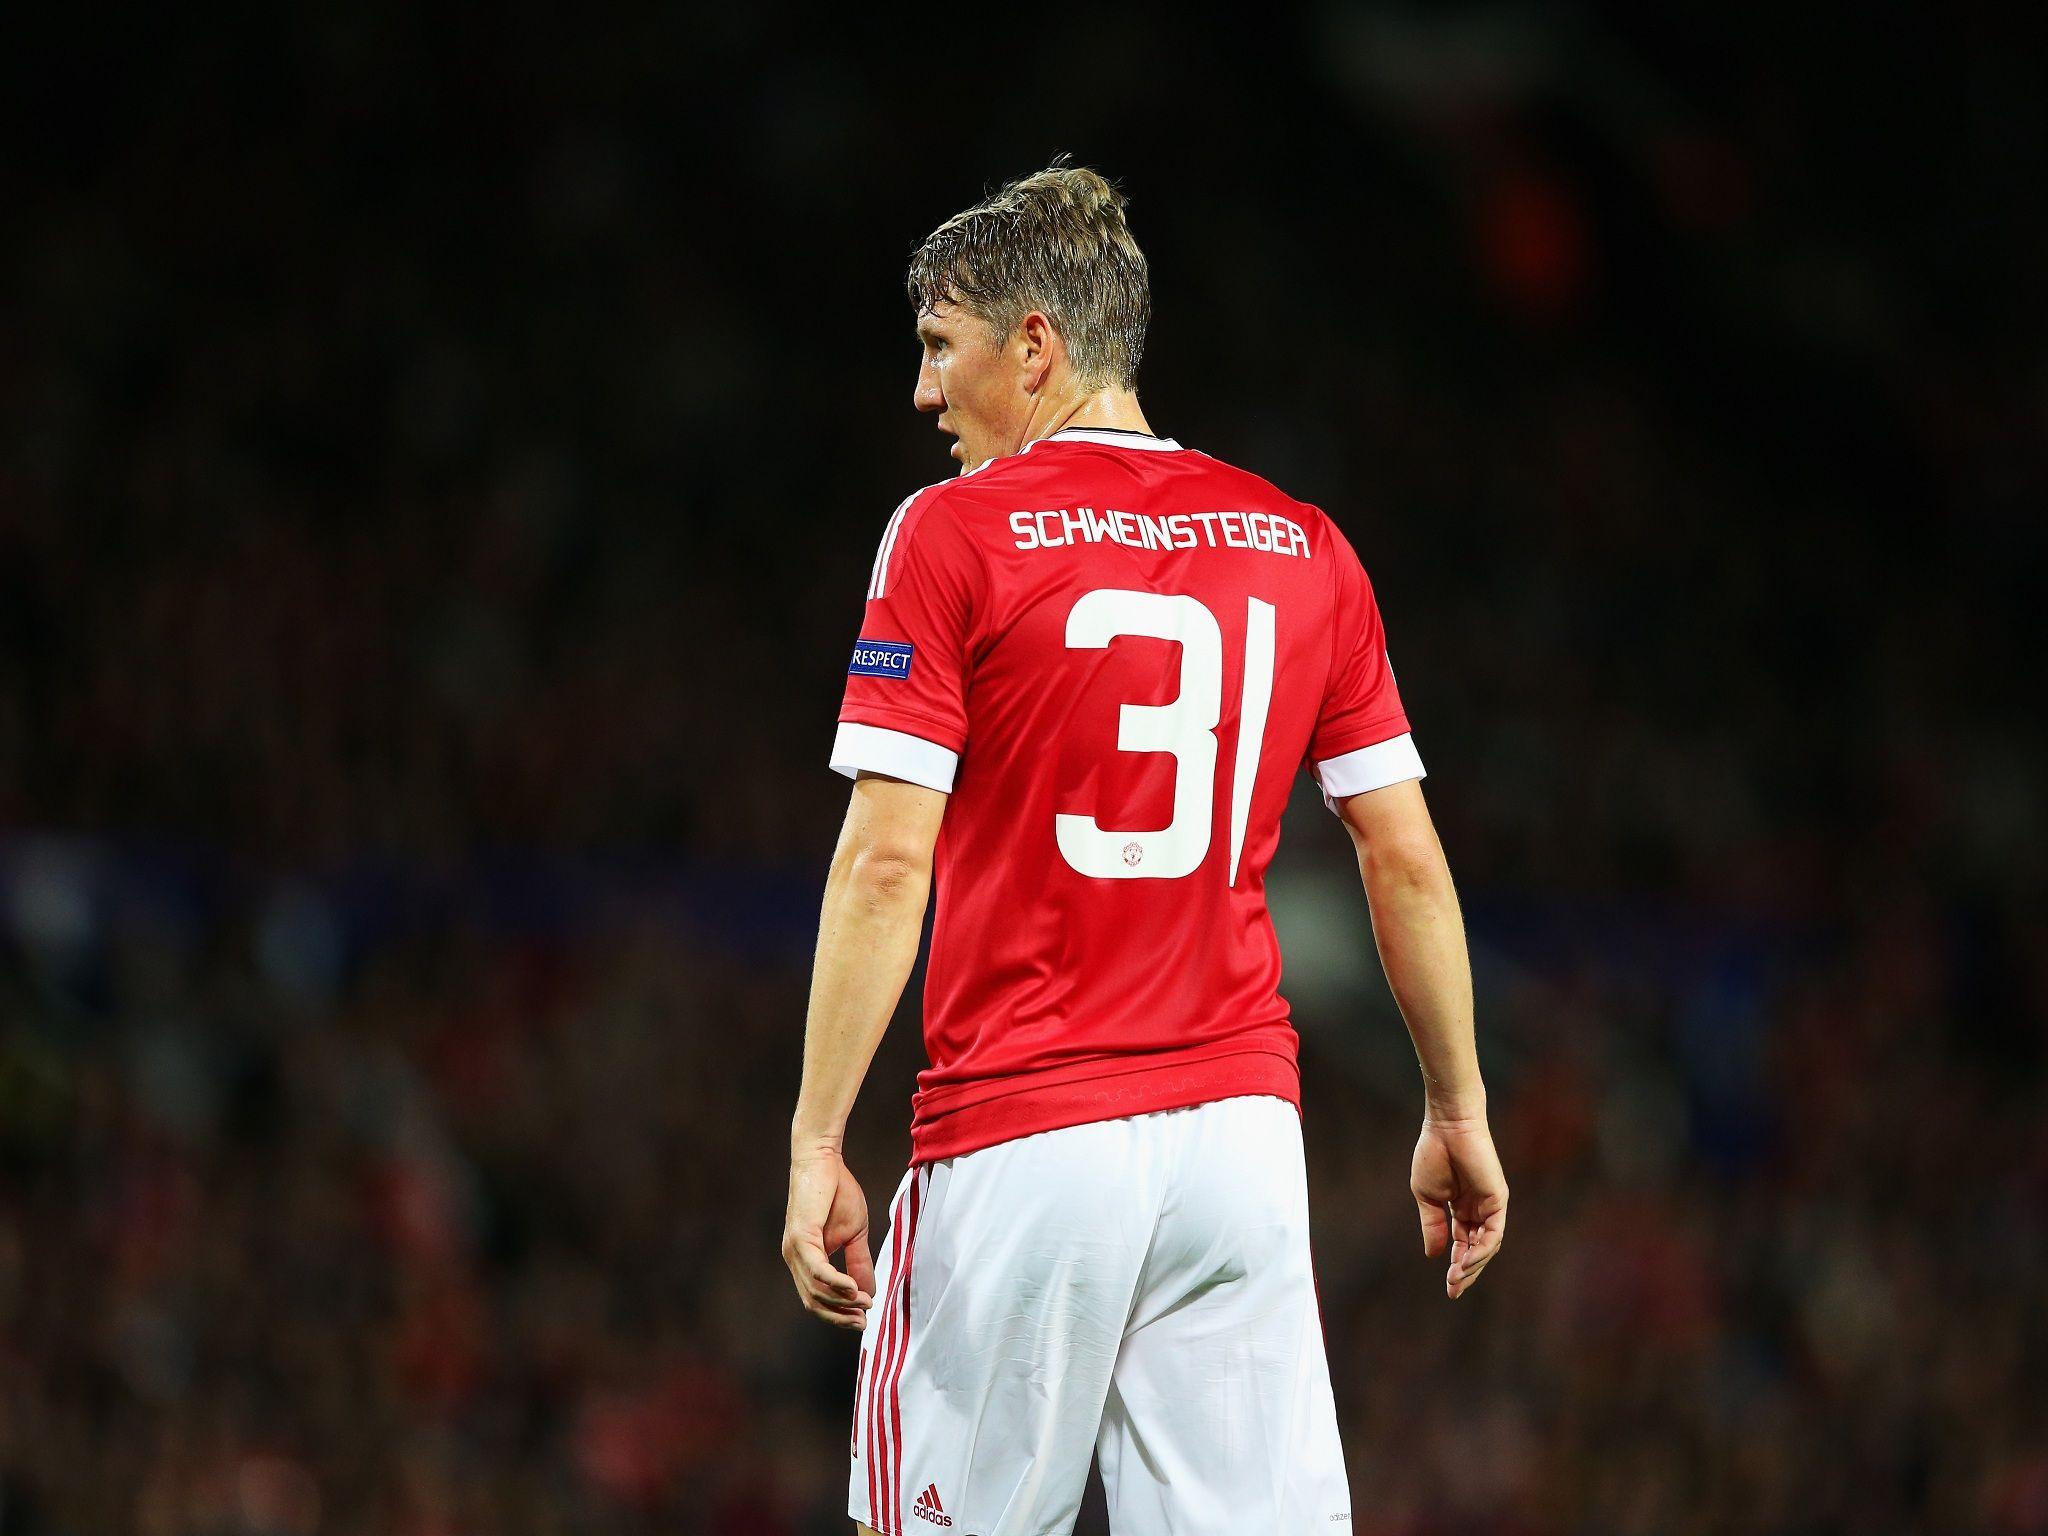 Manchester United midfielder Bastian Schweinsteiger employs former